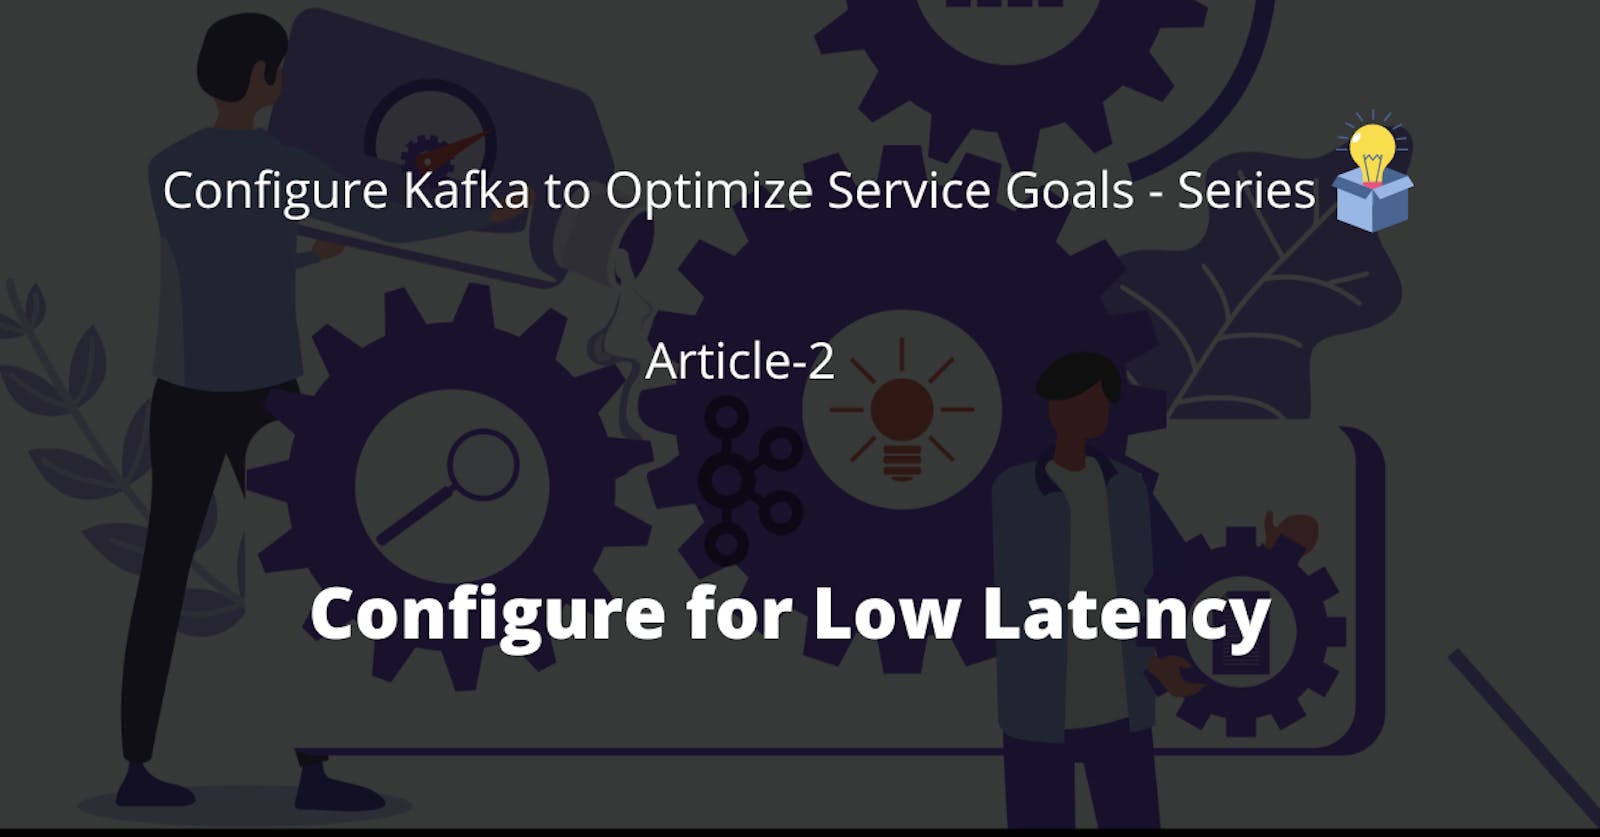 Configure Kafka for Low Latency